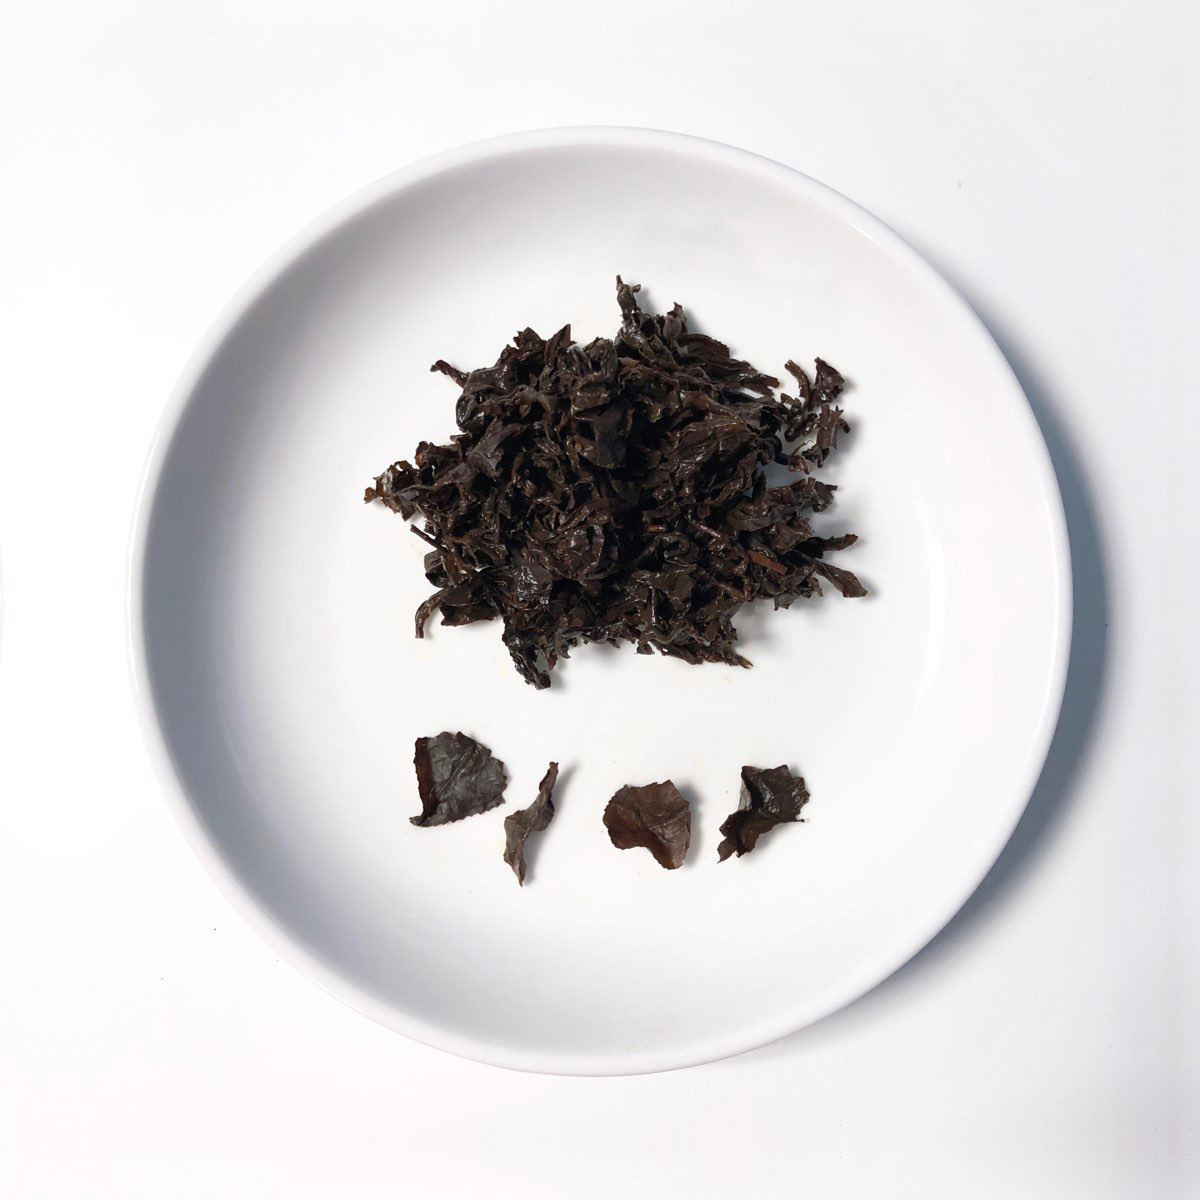 紅烏龍 Black Oolong Tea 濕茶葉 wet tea leaf 台灣茶 taiwan tea | 茶學家 tea scholar重發酵至葉子全變紅褐色